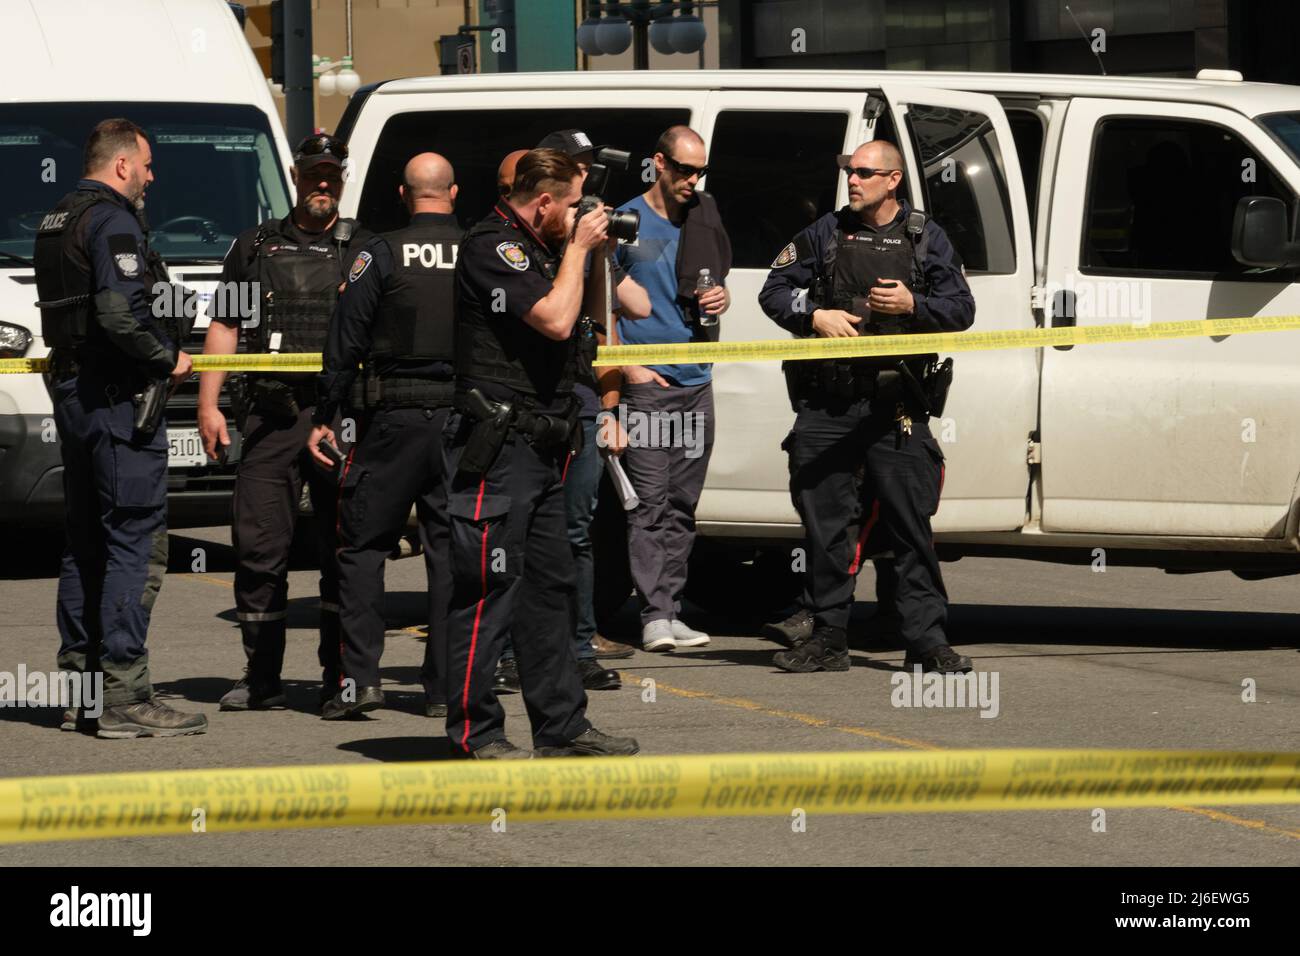 Ottawa, Ontario, Canada - 30 aprile 2022: Un ufficiale dei servizi di polizia di Ottawa (OPS) fotografa la scena di un incidente dietro nastro giallo della polizia. Foto Stock